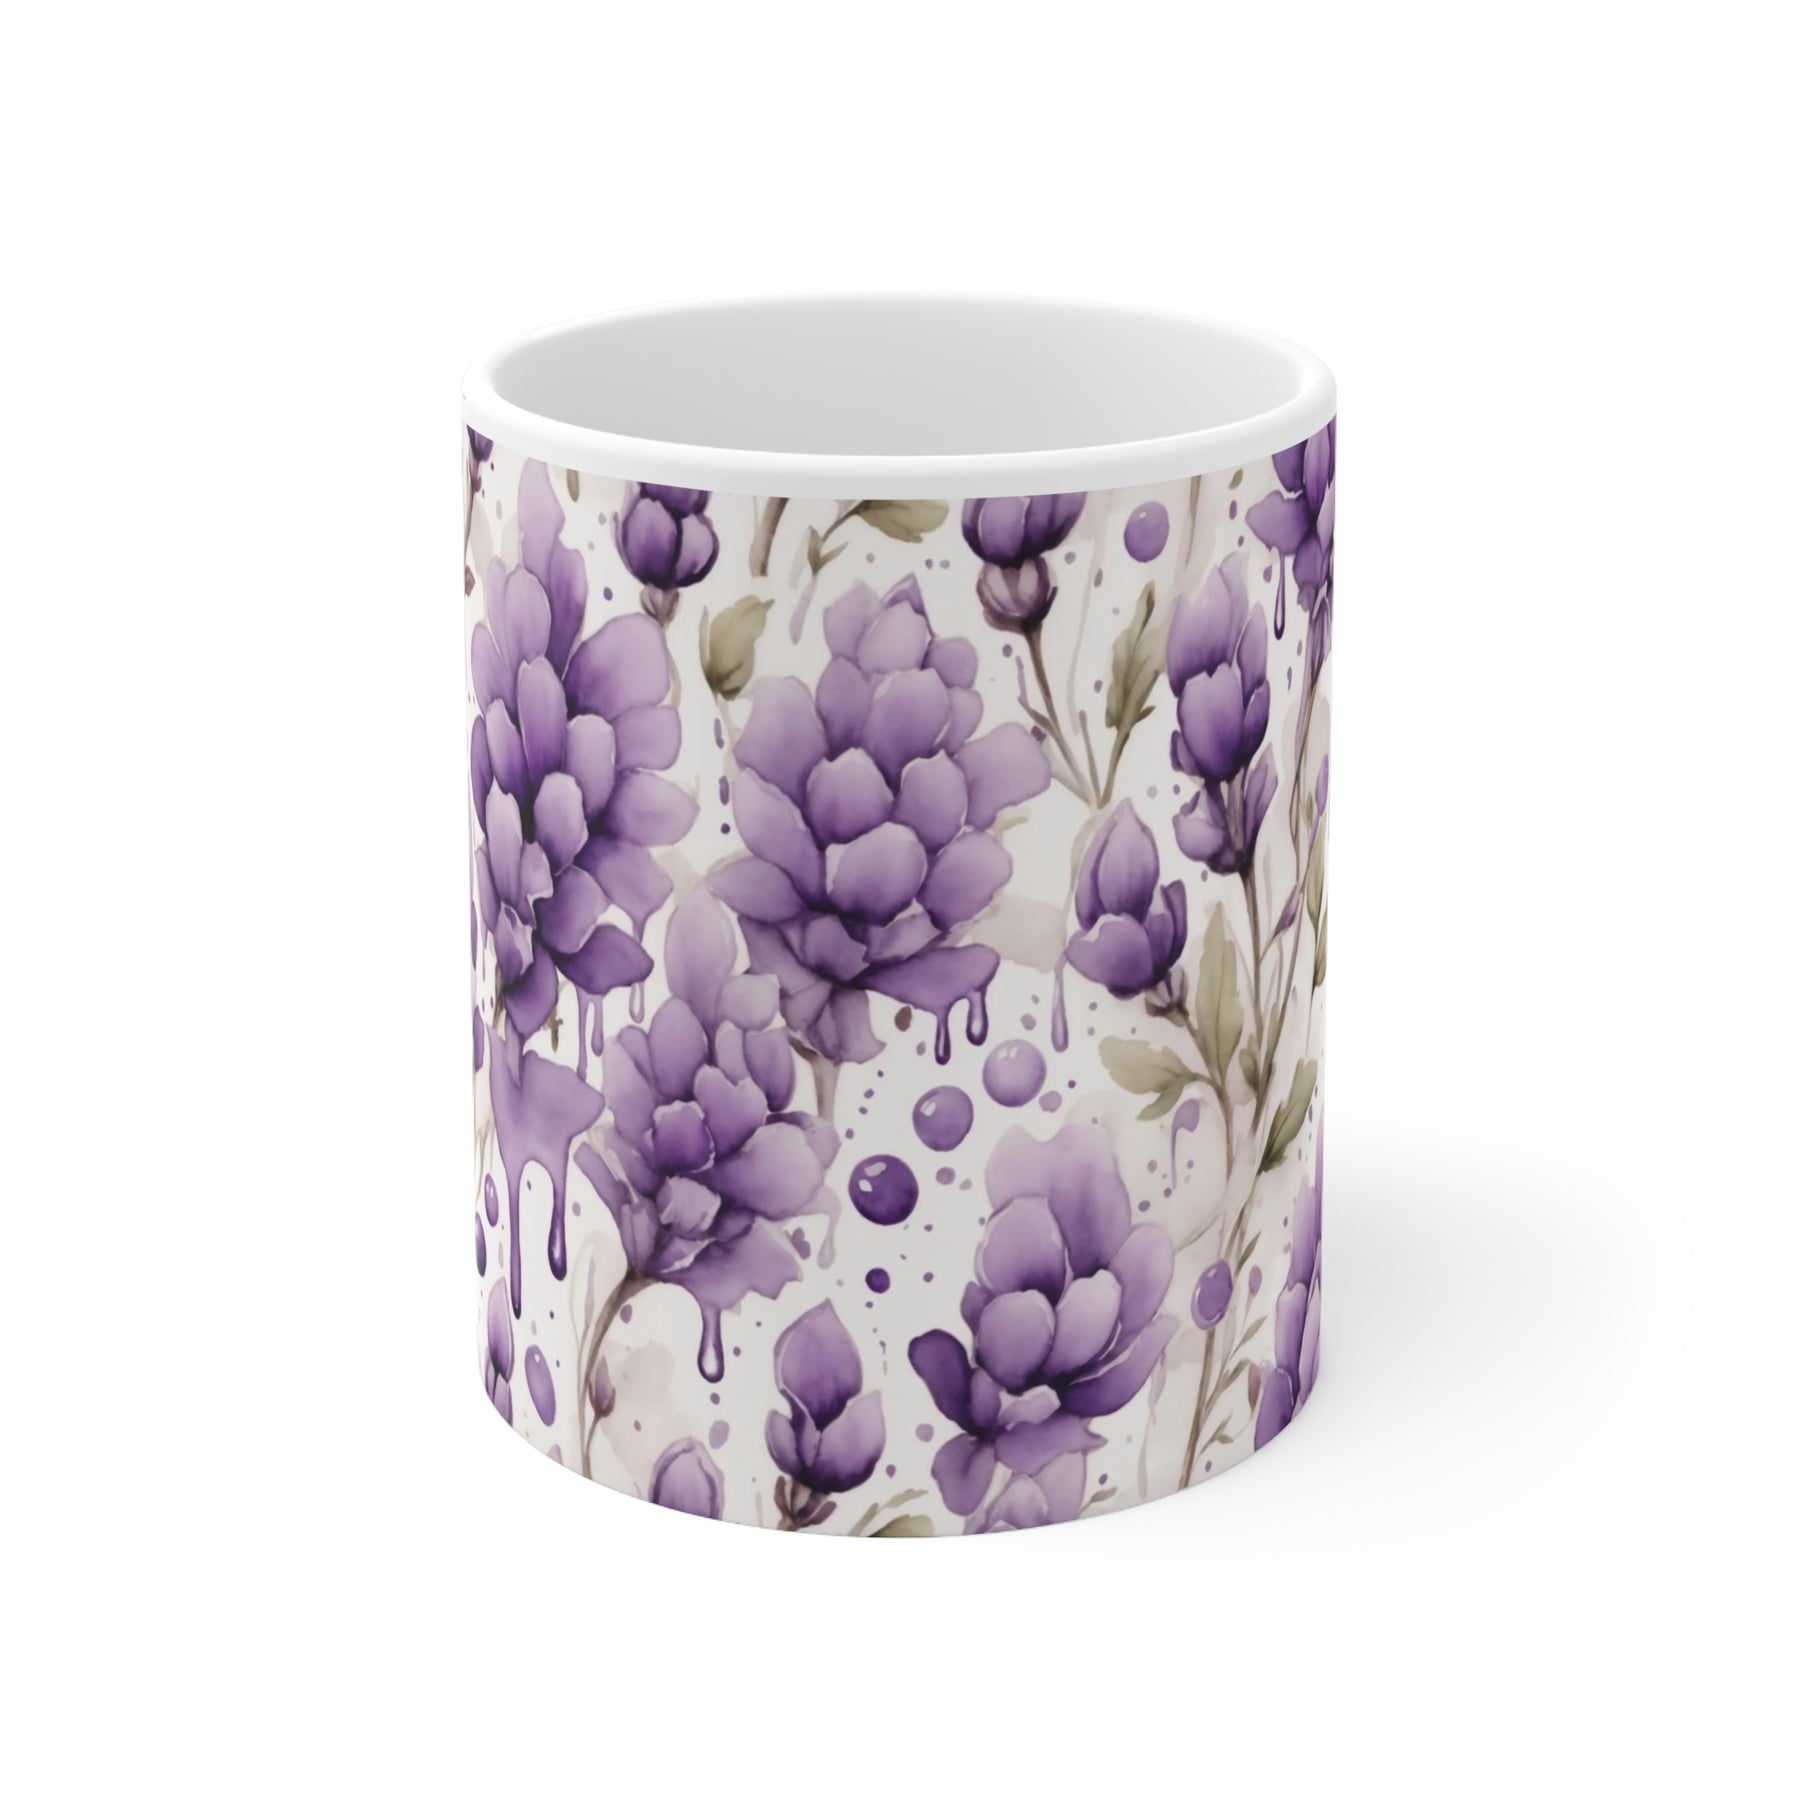 Lavender Watercolor cup